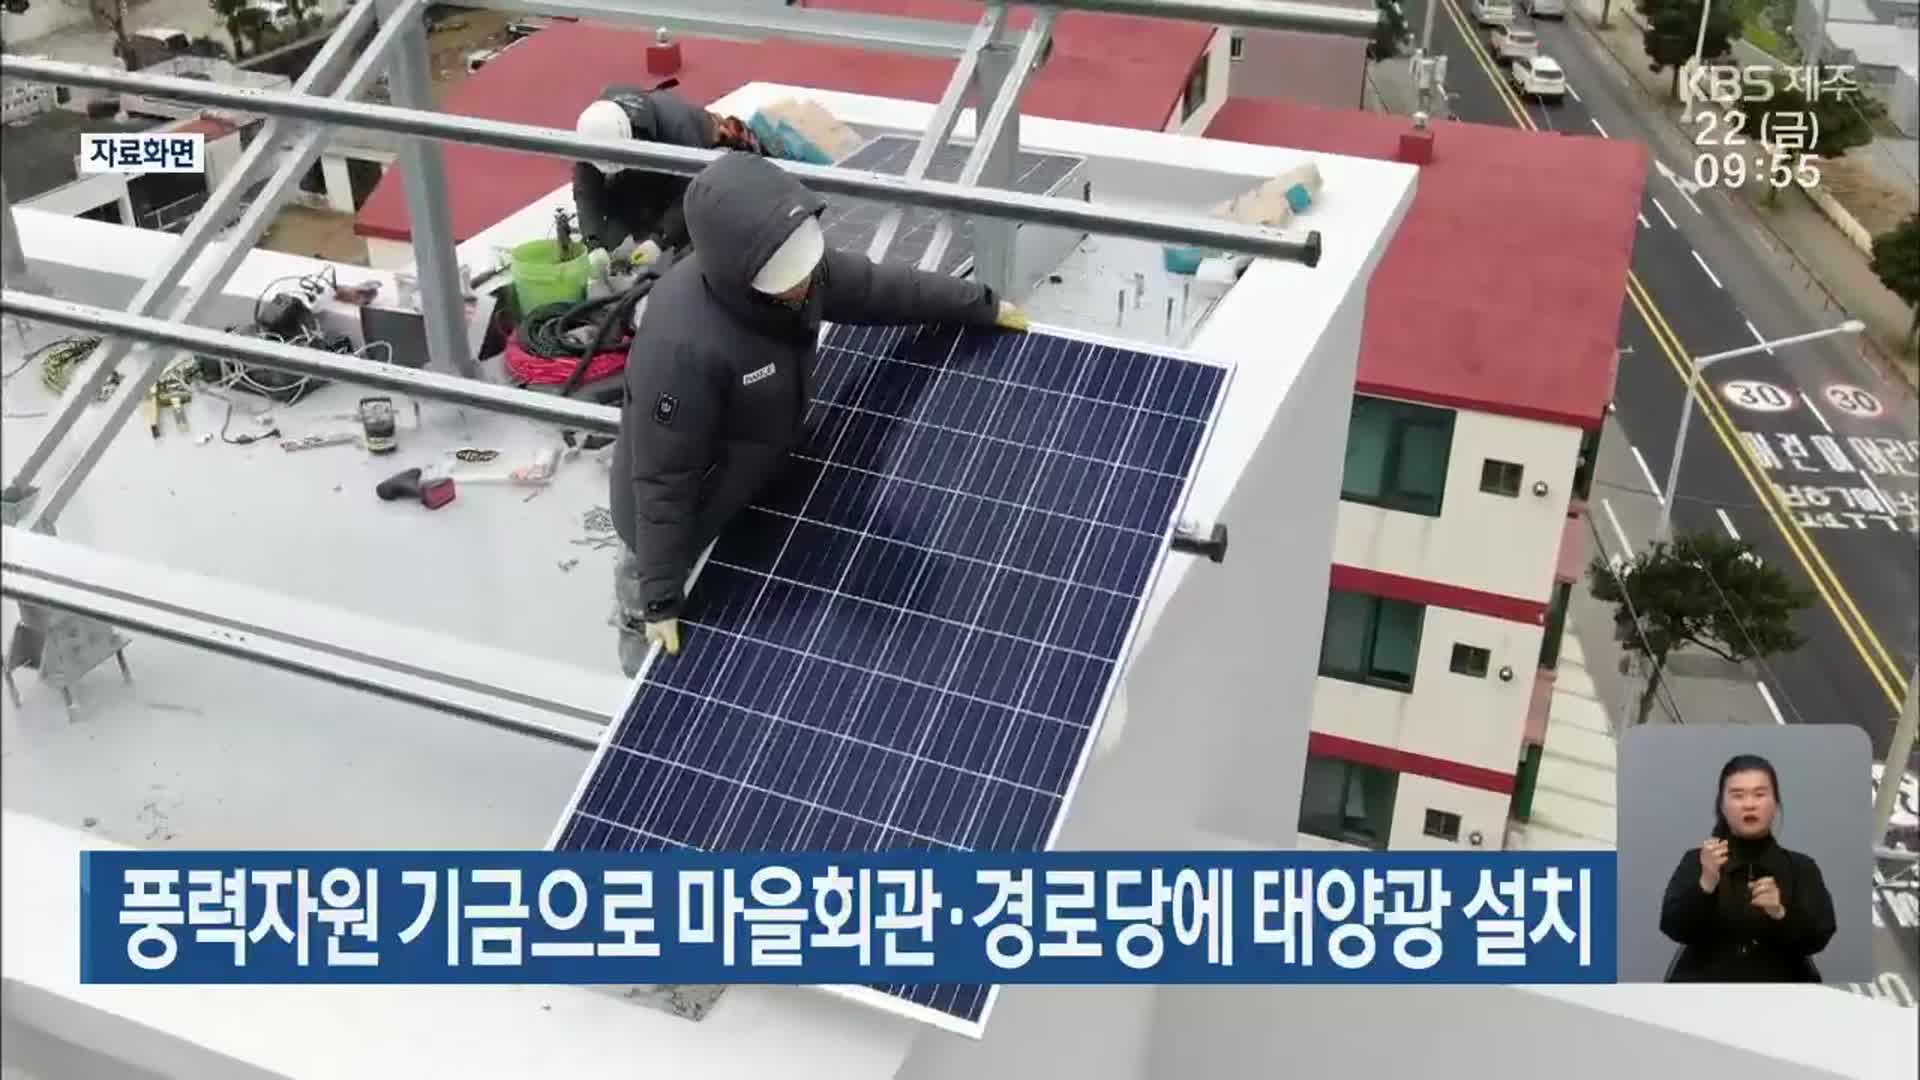 풍력자원 기금으로 마을회관·경로당에 태양광 설치